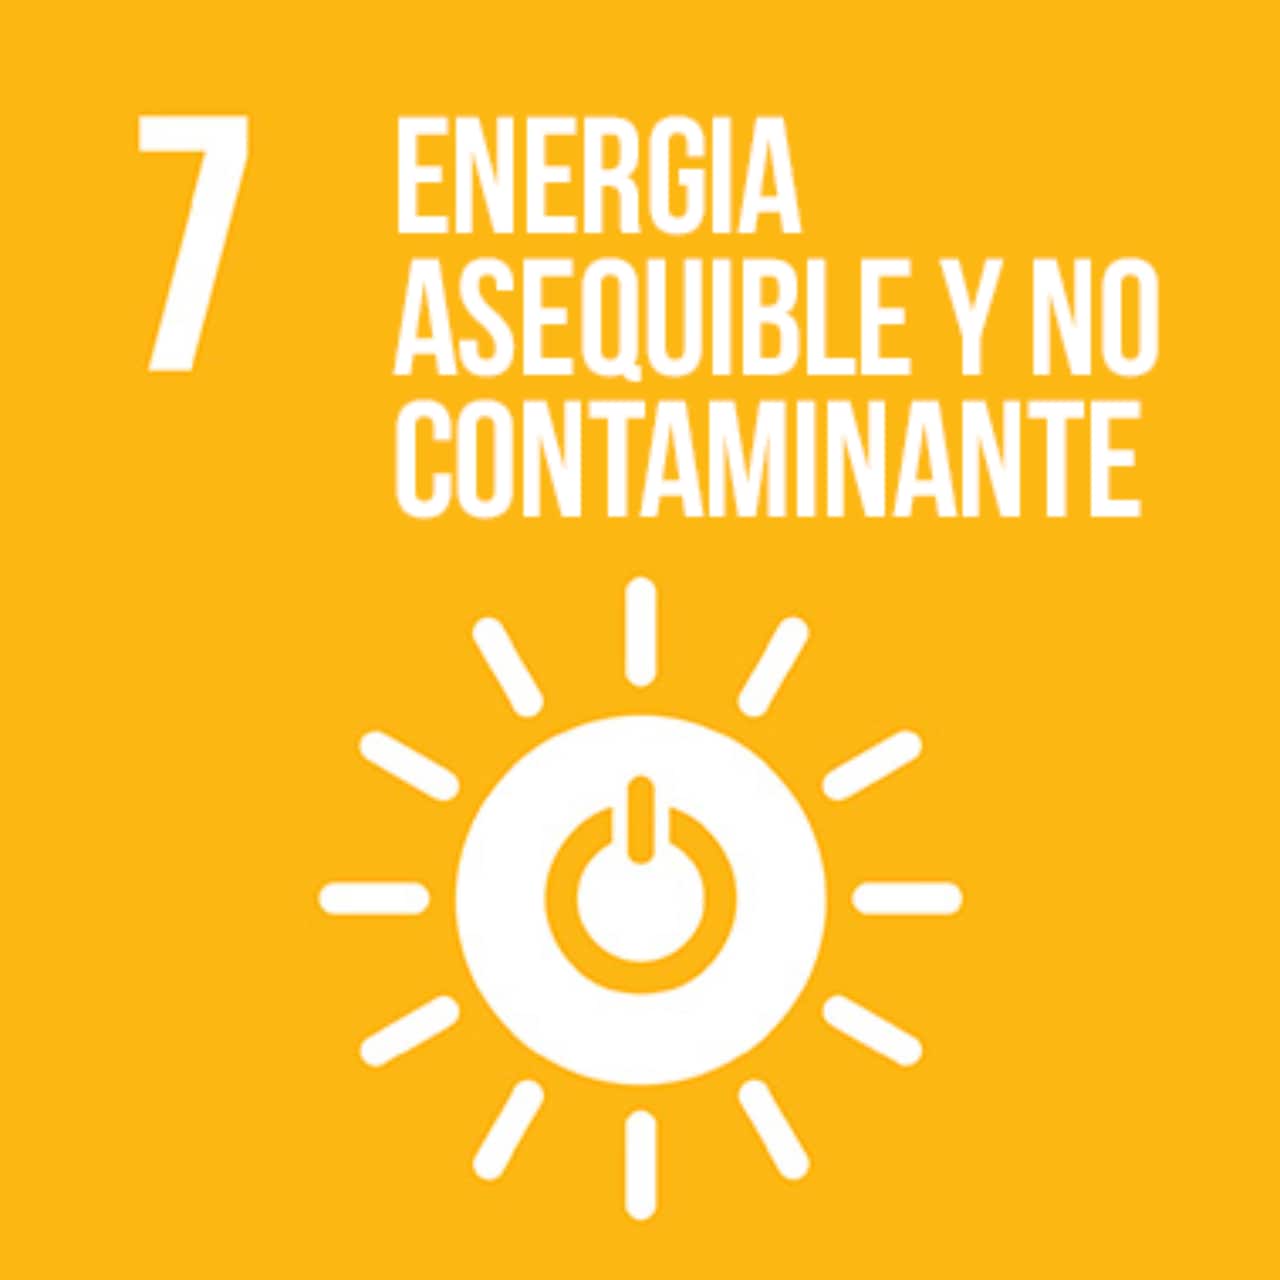 Imagen que representa el ODS número Siete - Energía Asequible y No Contaminante, con un fondo amarillo y el ícono del sol, con el símbolo de " encender/apagar" dentro de él.